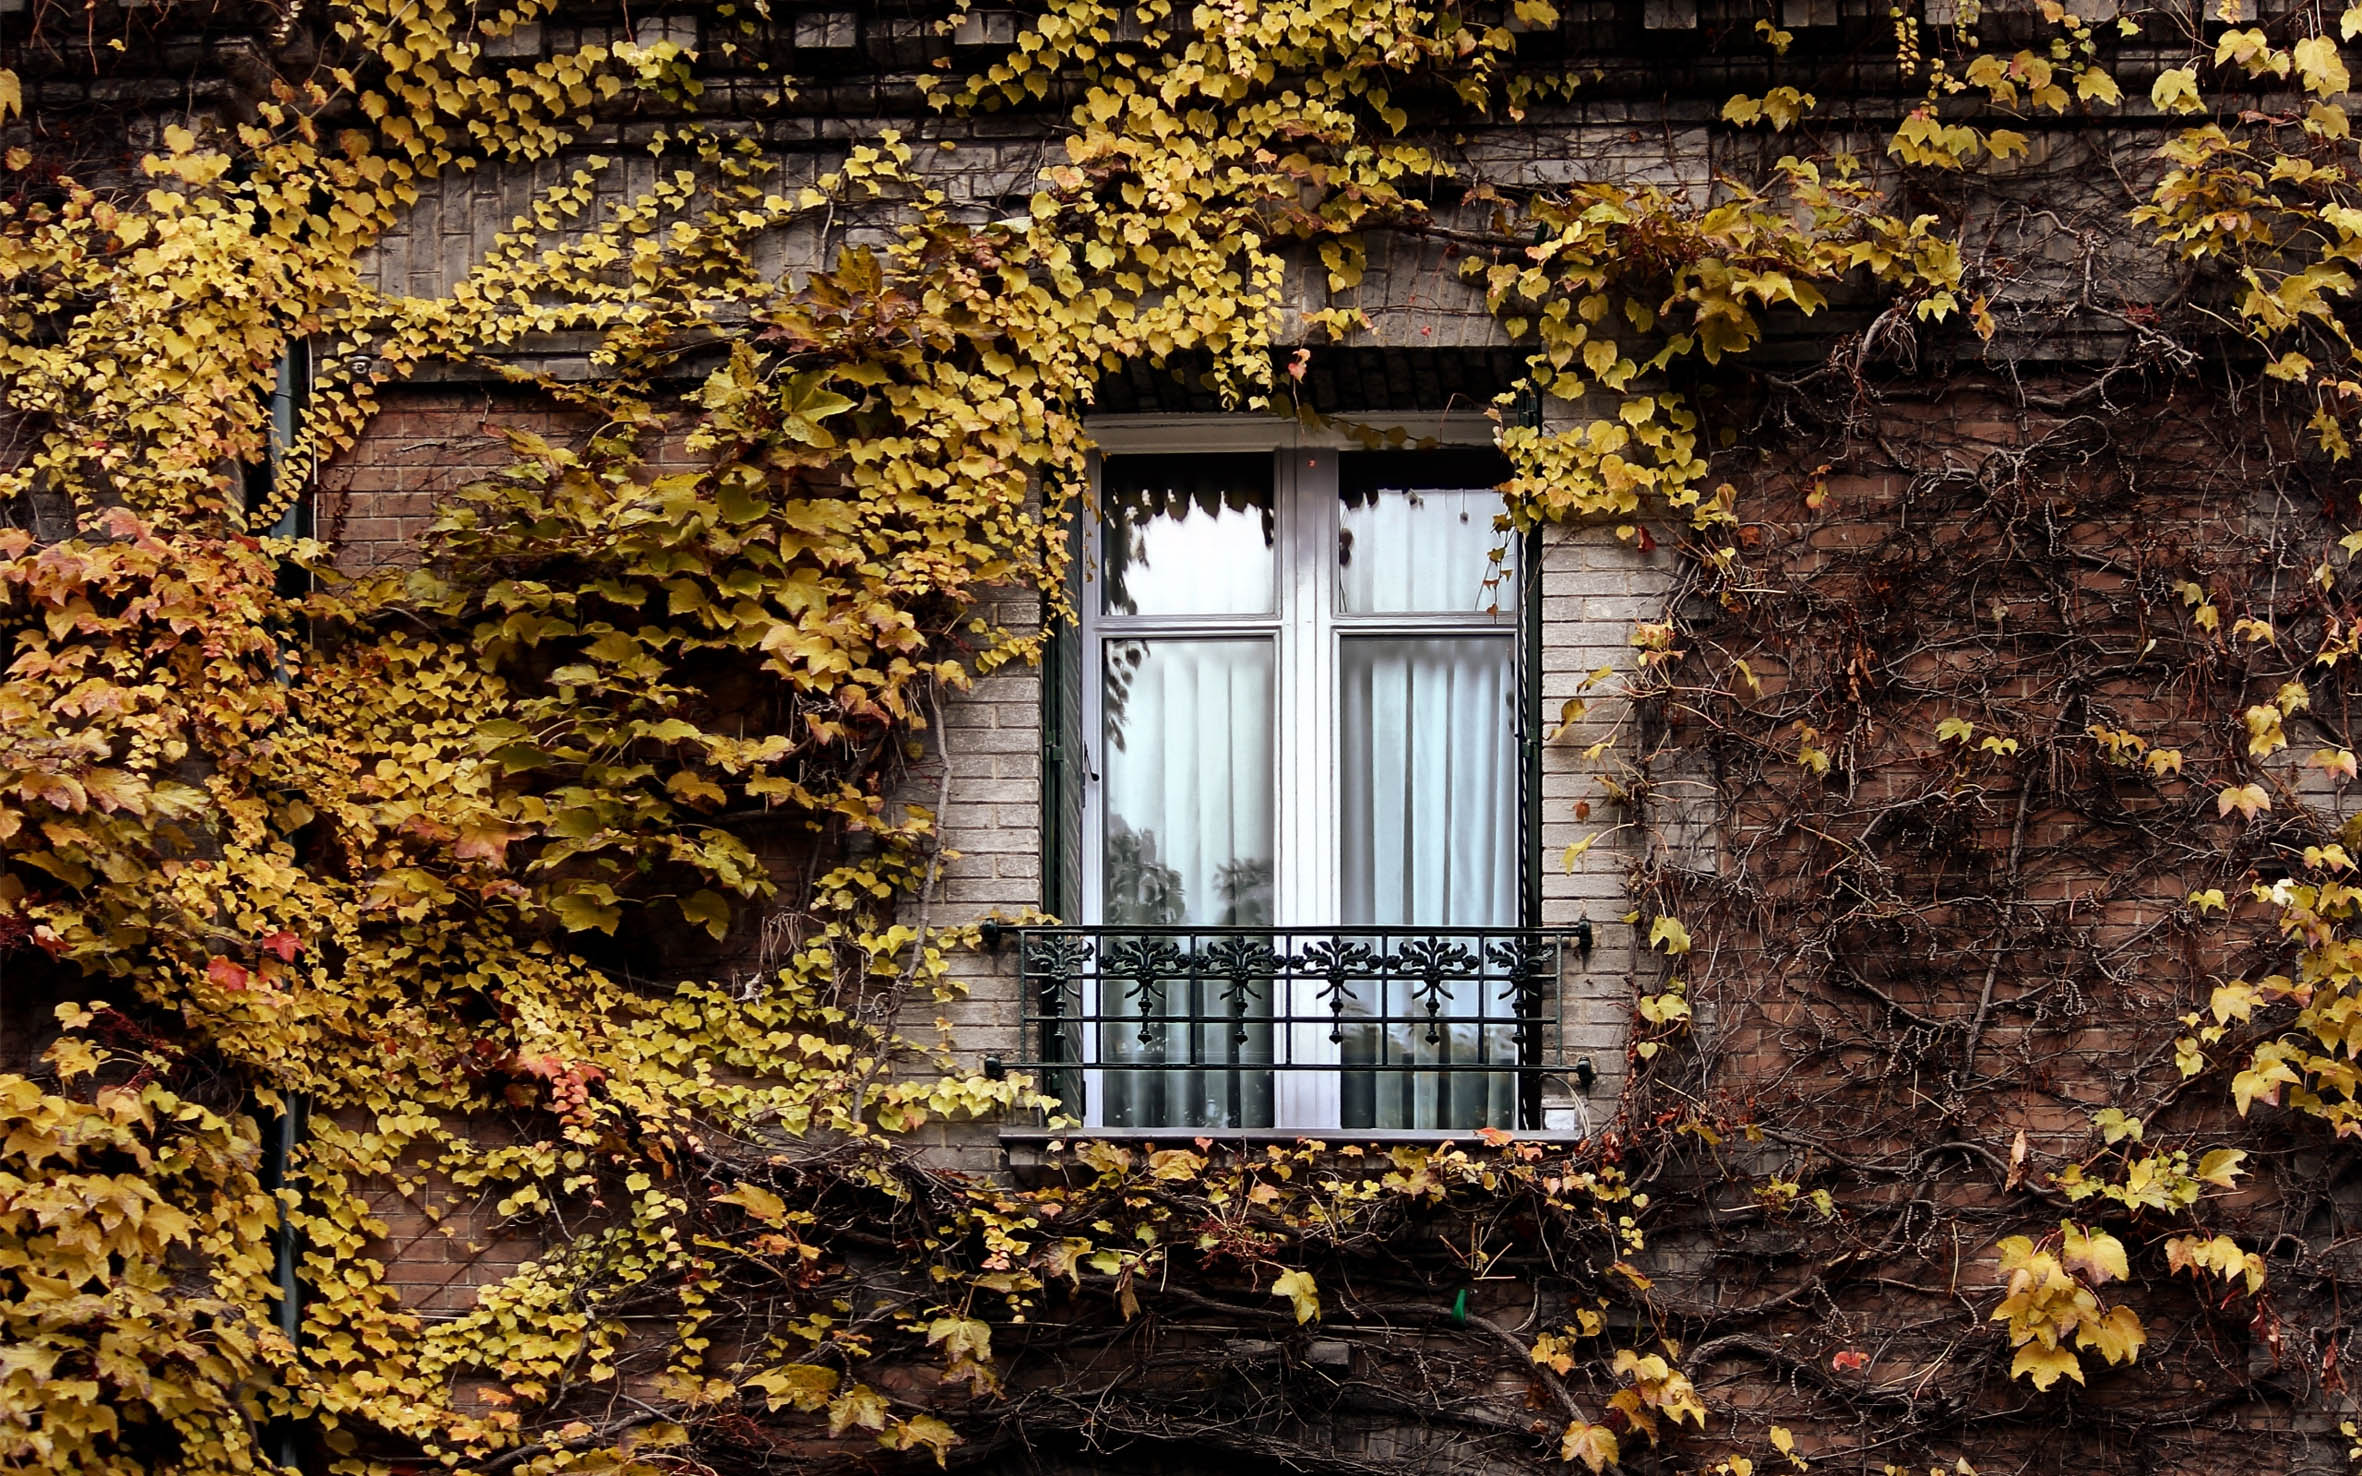 Посуточную квартиру в Киеве лучше бронировать заранее, особенно весной и осенью